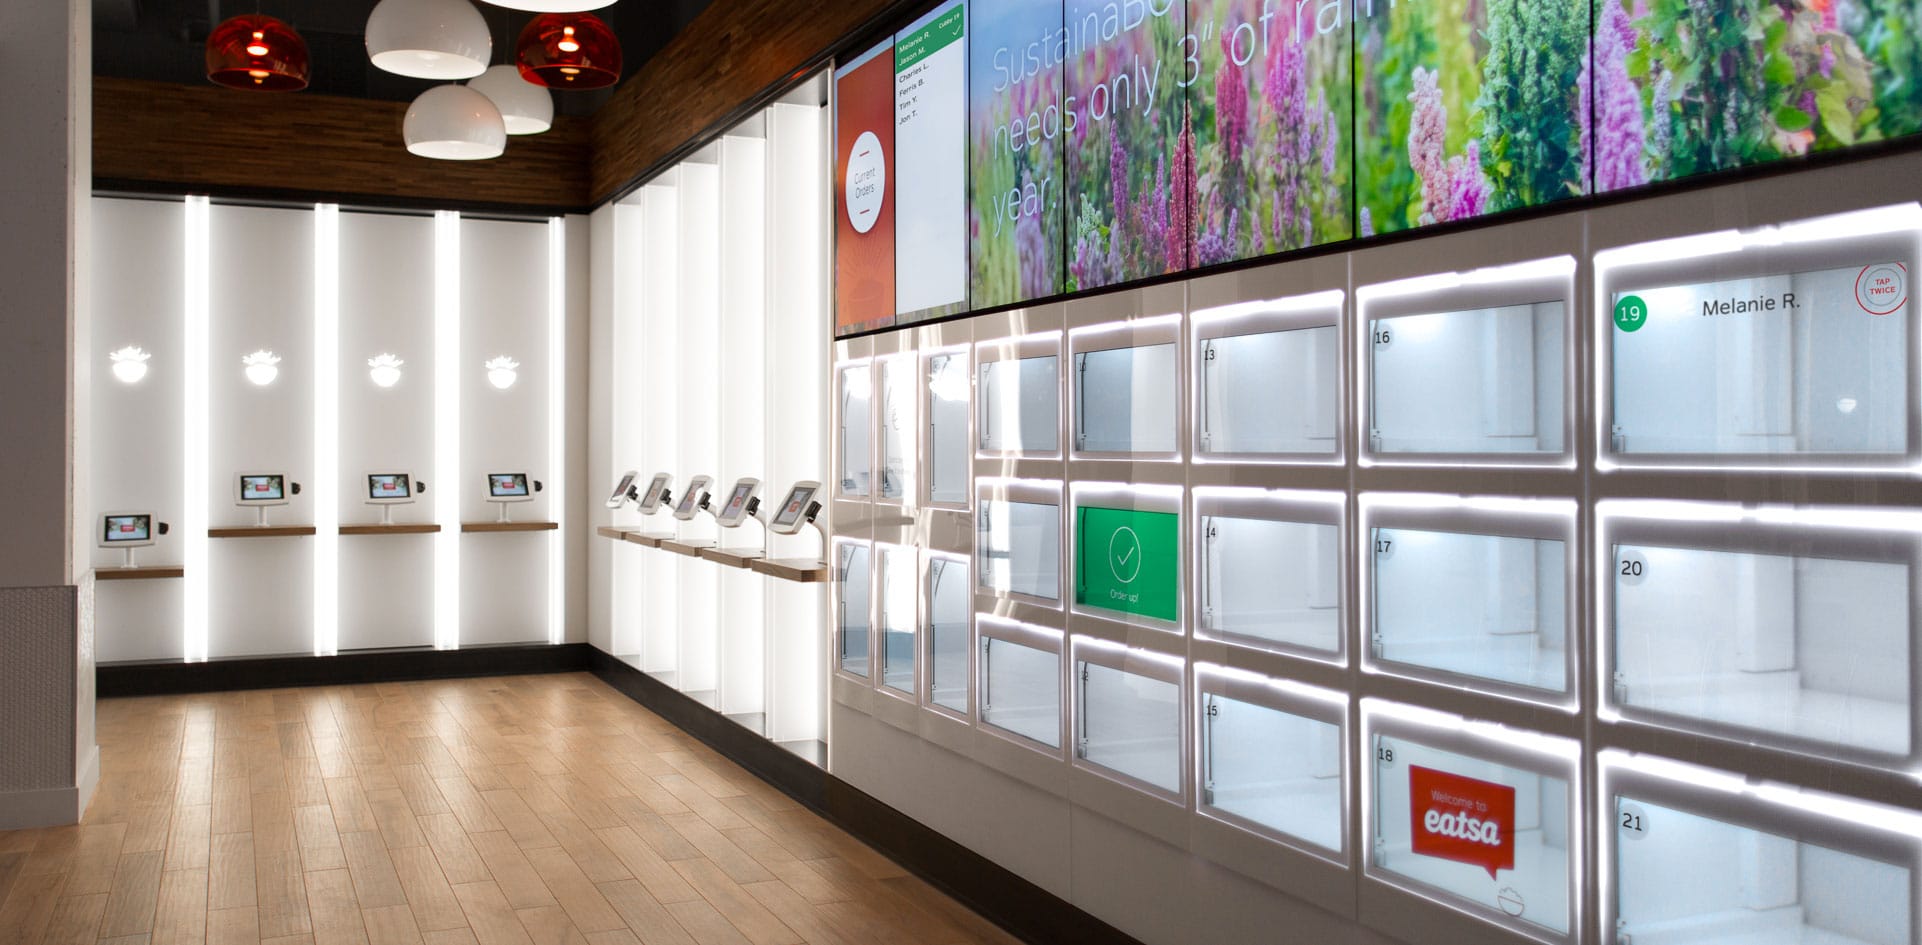 Eatsa, a San Francisco il primo ristorante digitalizzato